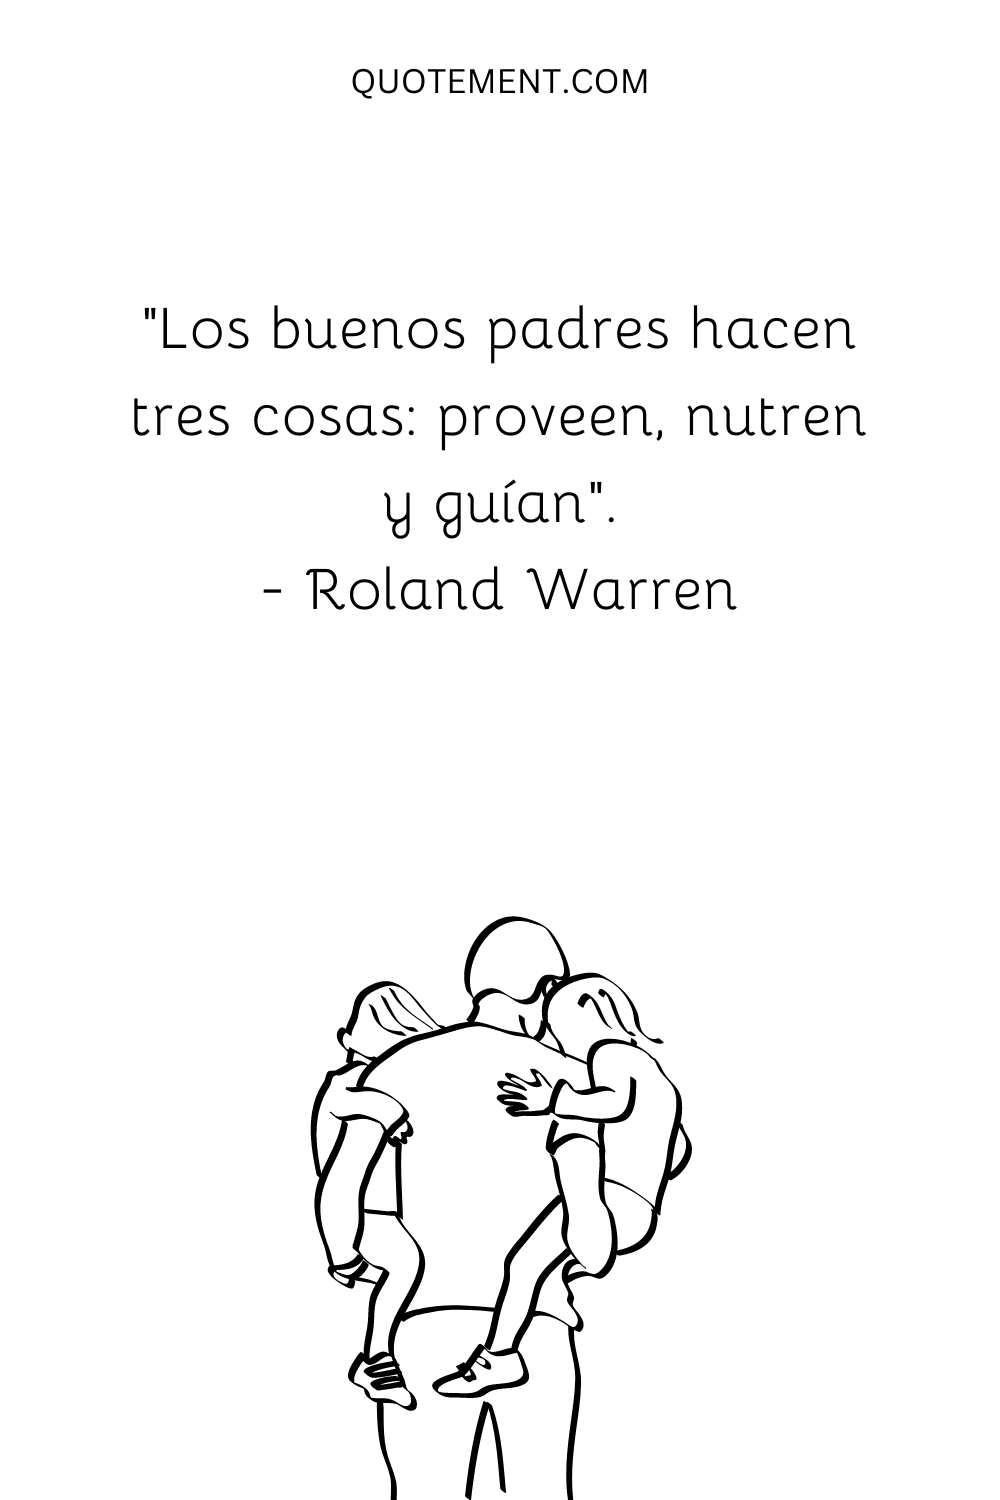 "Los buenos padres hacen tres cosas: proveen, nutren y guían". - Roland Warren